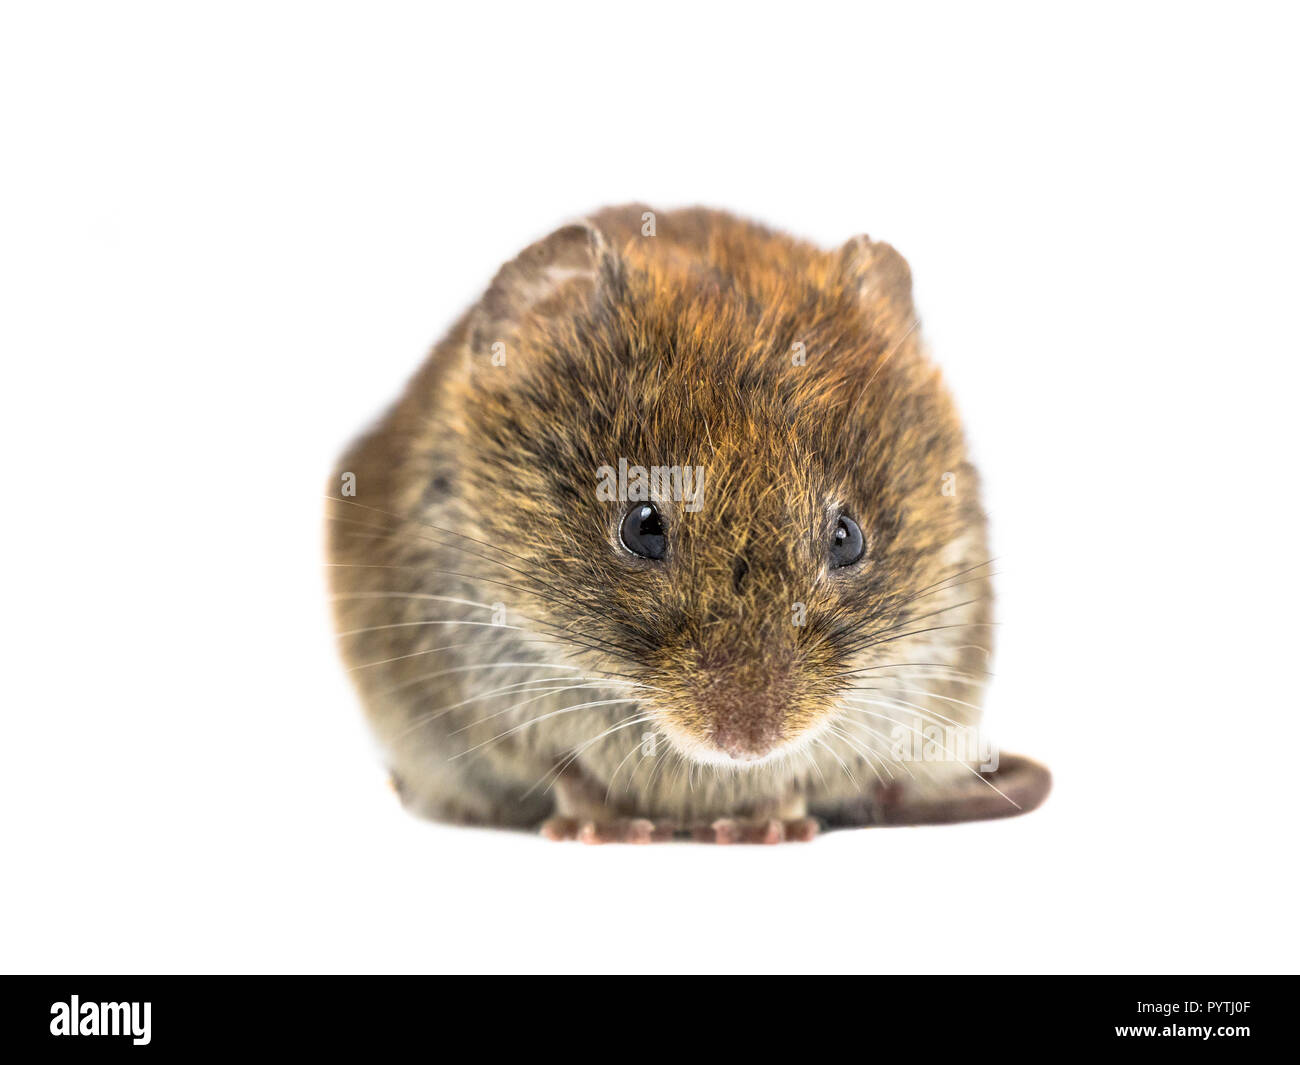 Frontale fino in prossimità della banca selvatici vole mouse (Myodes glareolus) guardando arrabbiato nella fotocamera su sfondo bianco Foto Stock